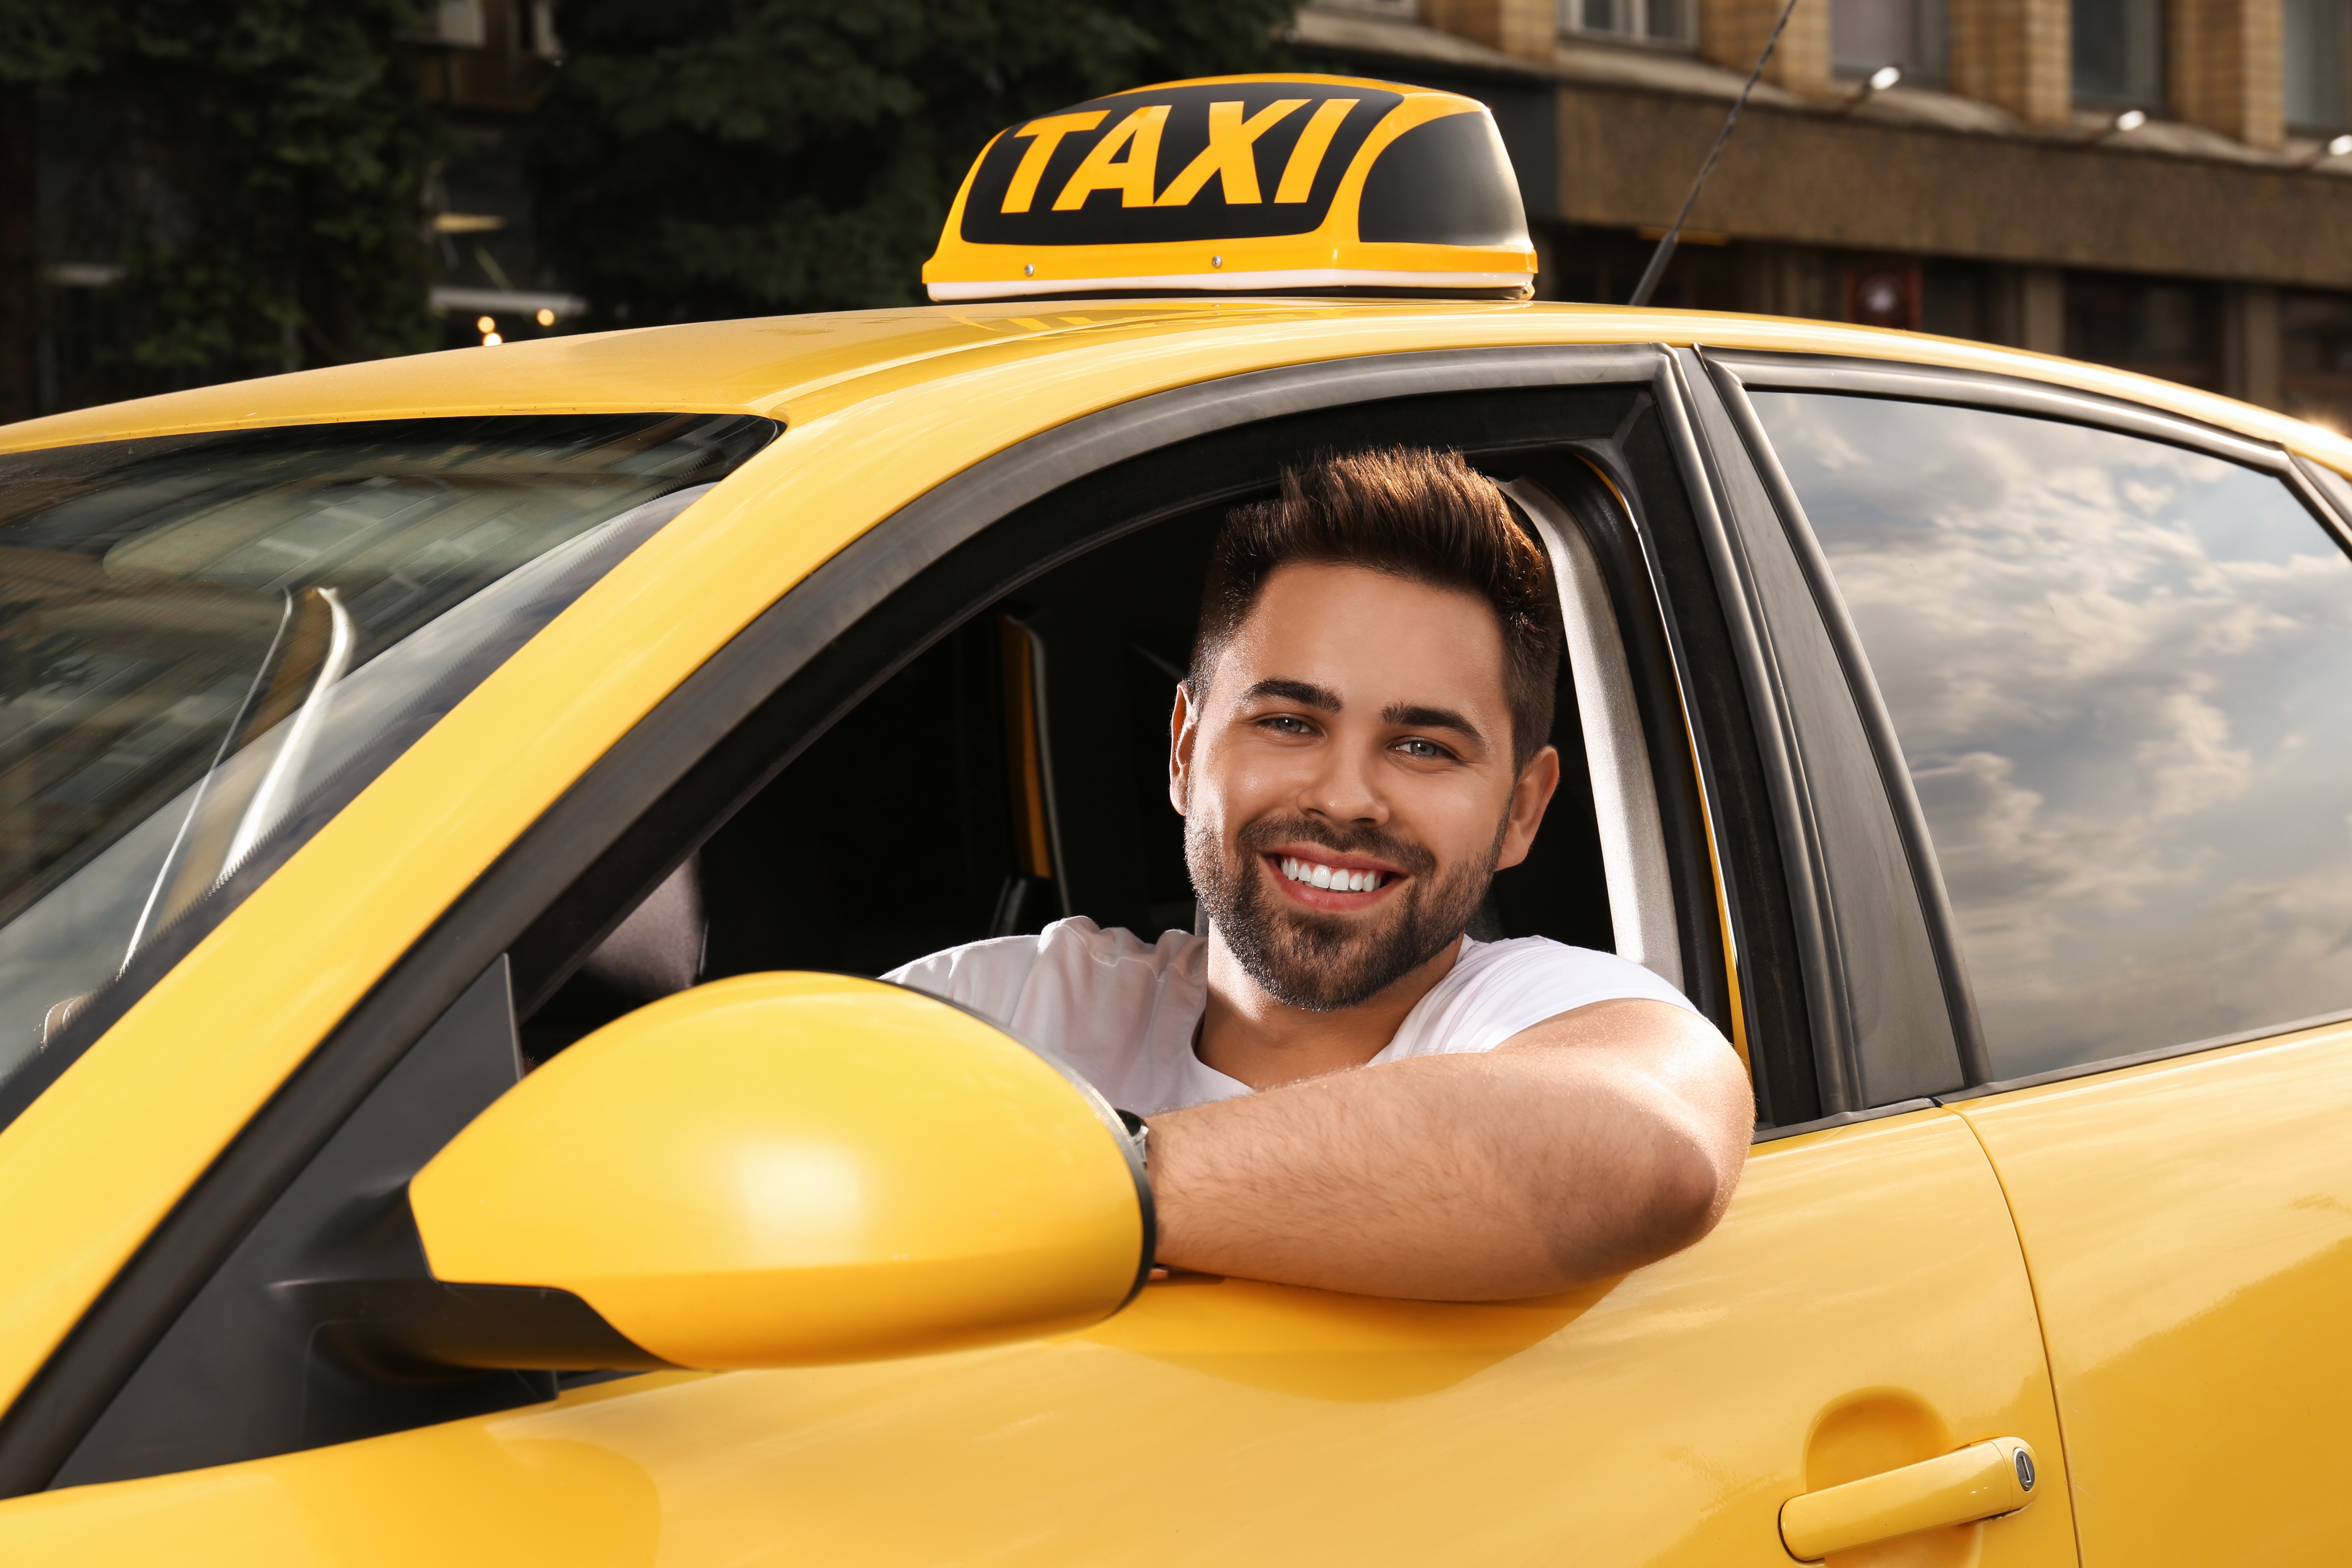 Ein männlicher Taxifahrer in einem gelben Taxi | Quelle: Shutterstock